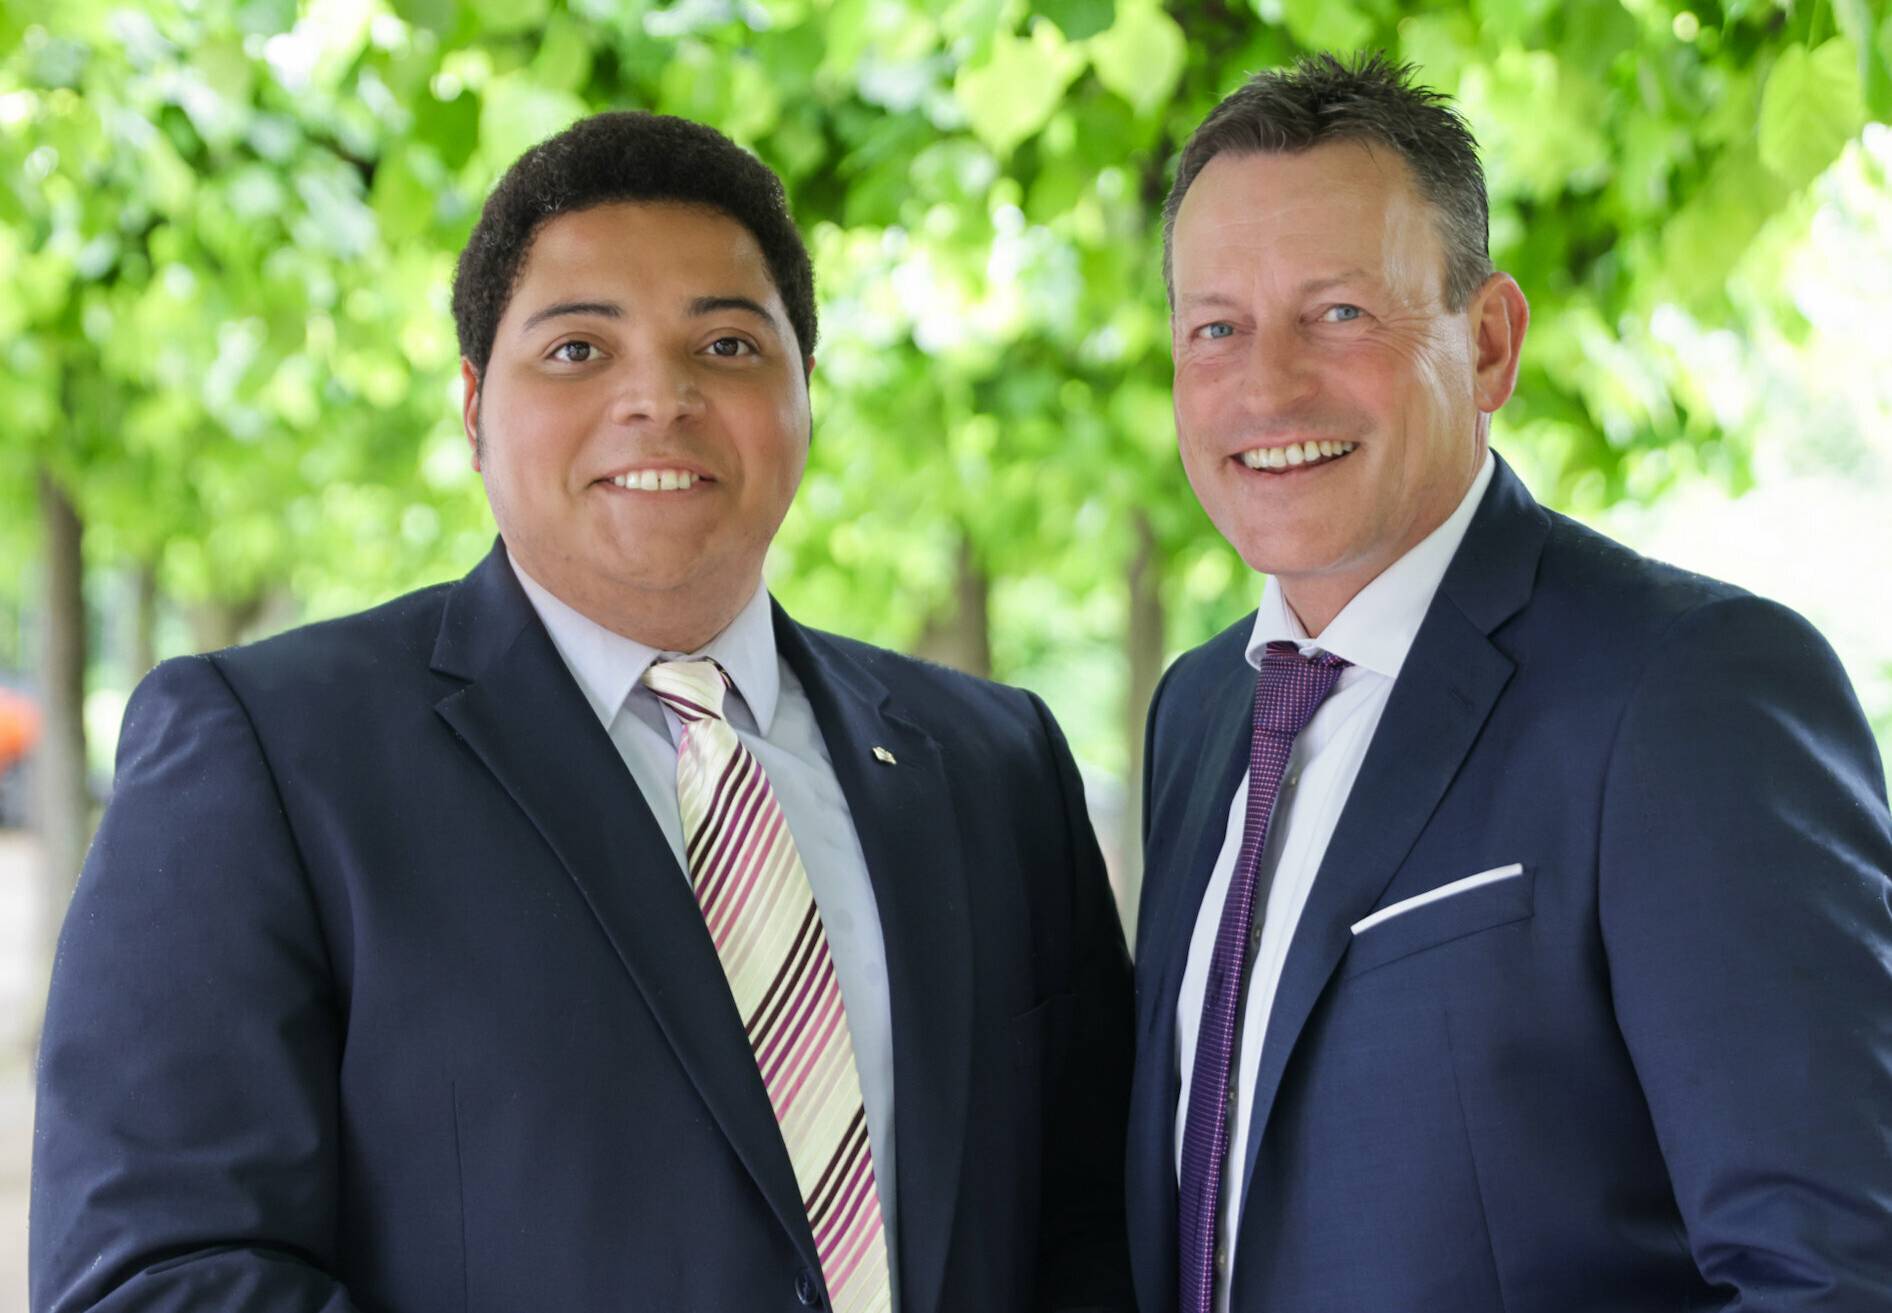  Heinrich Thiel als Aufsichtsratsvorsitzender und Dirk Reimann als Sprecher der Geschäftsführung bilden die neue Spitze des Neusser Bauvereins.  